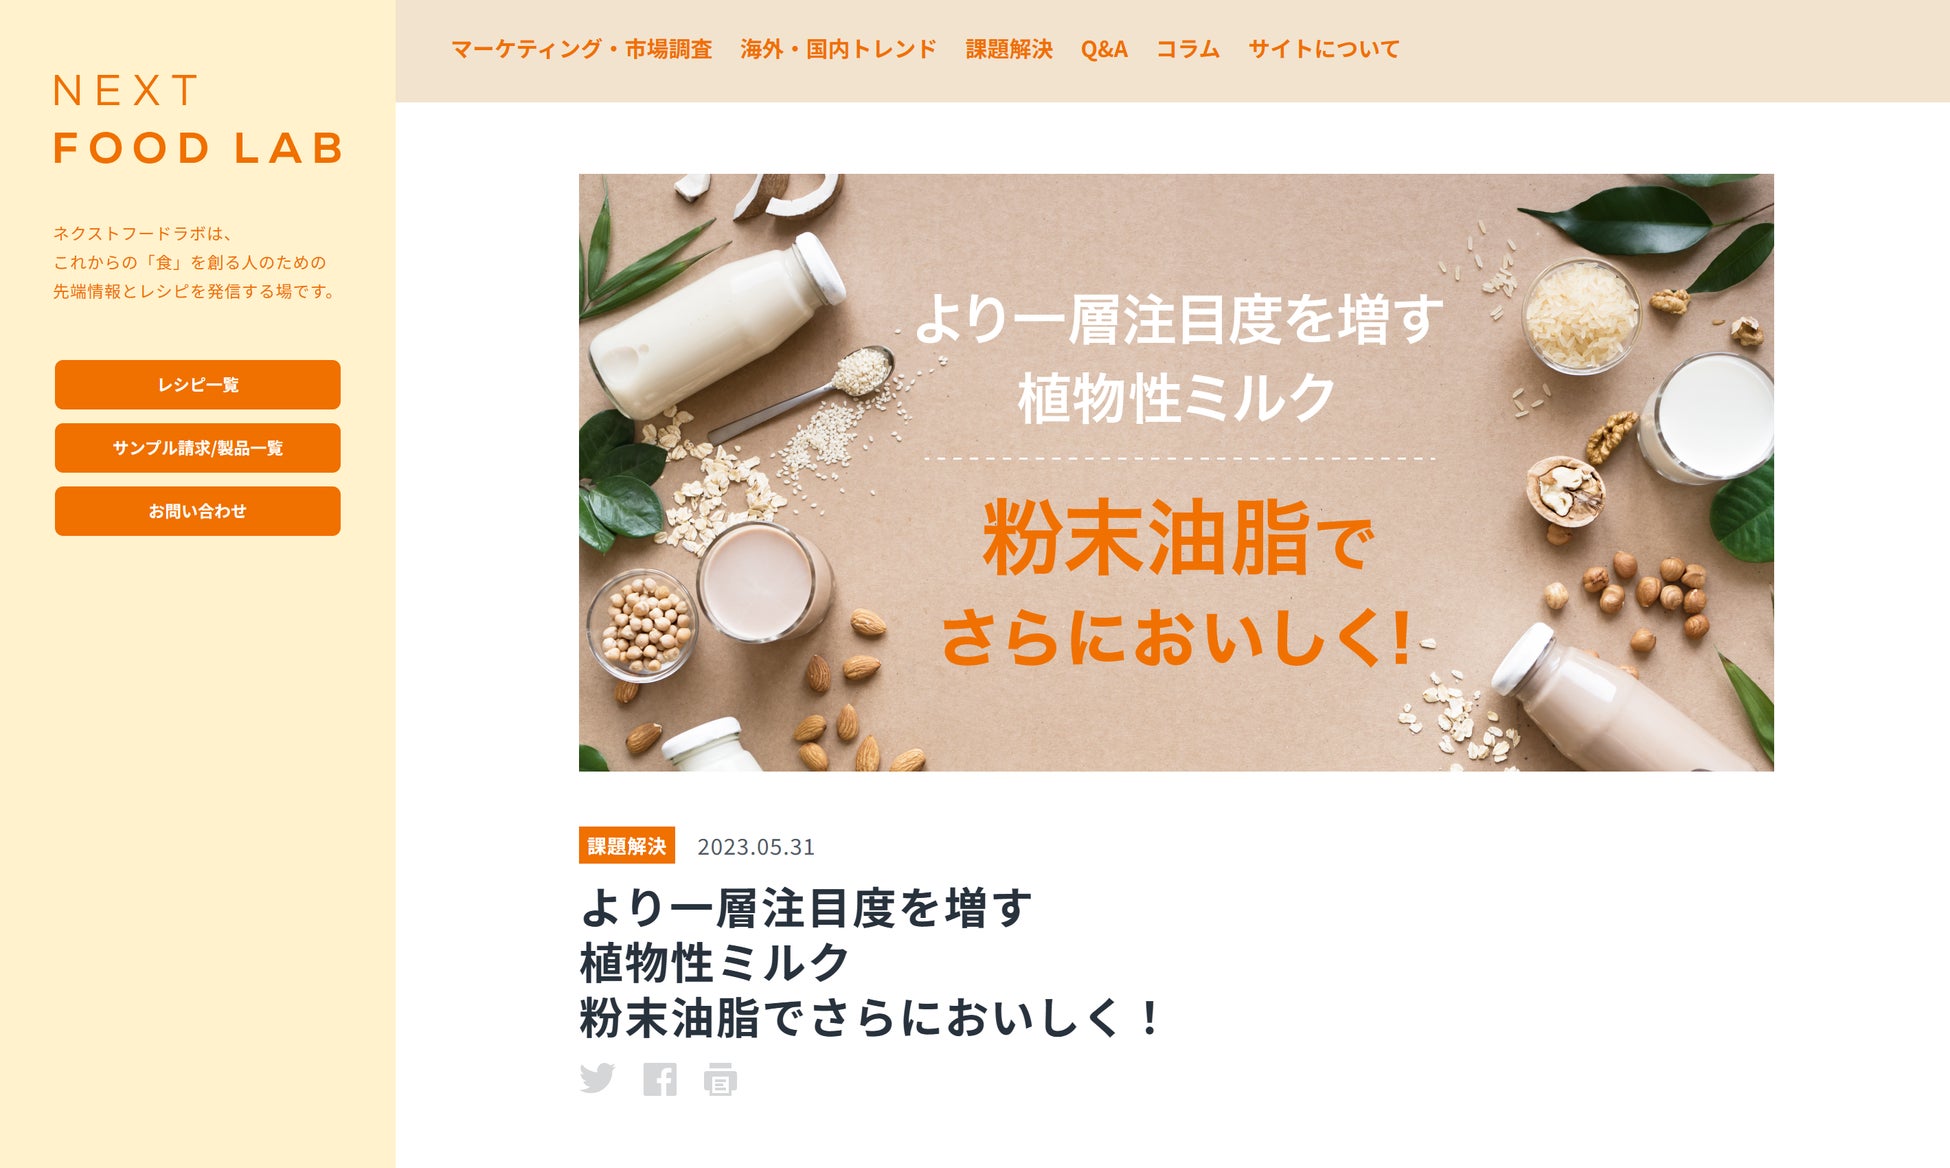 【日本一ふわっふわとろっとろの大福】を目指して開発した「お亀堂」渾身の逸品が販売開始